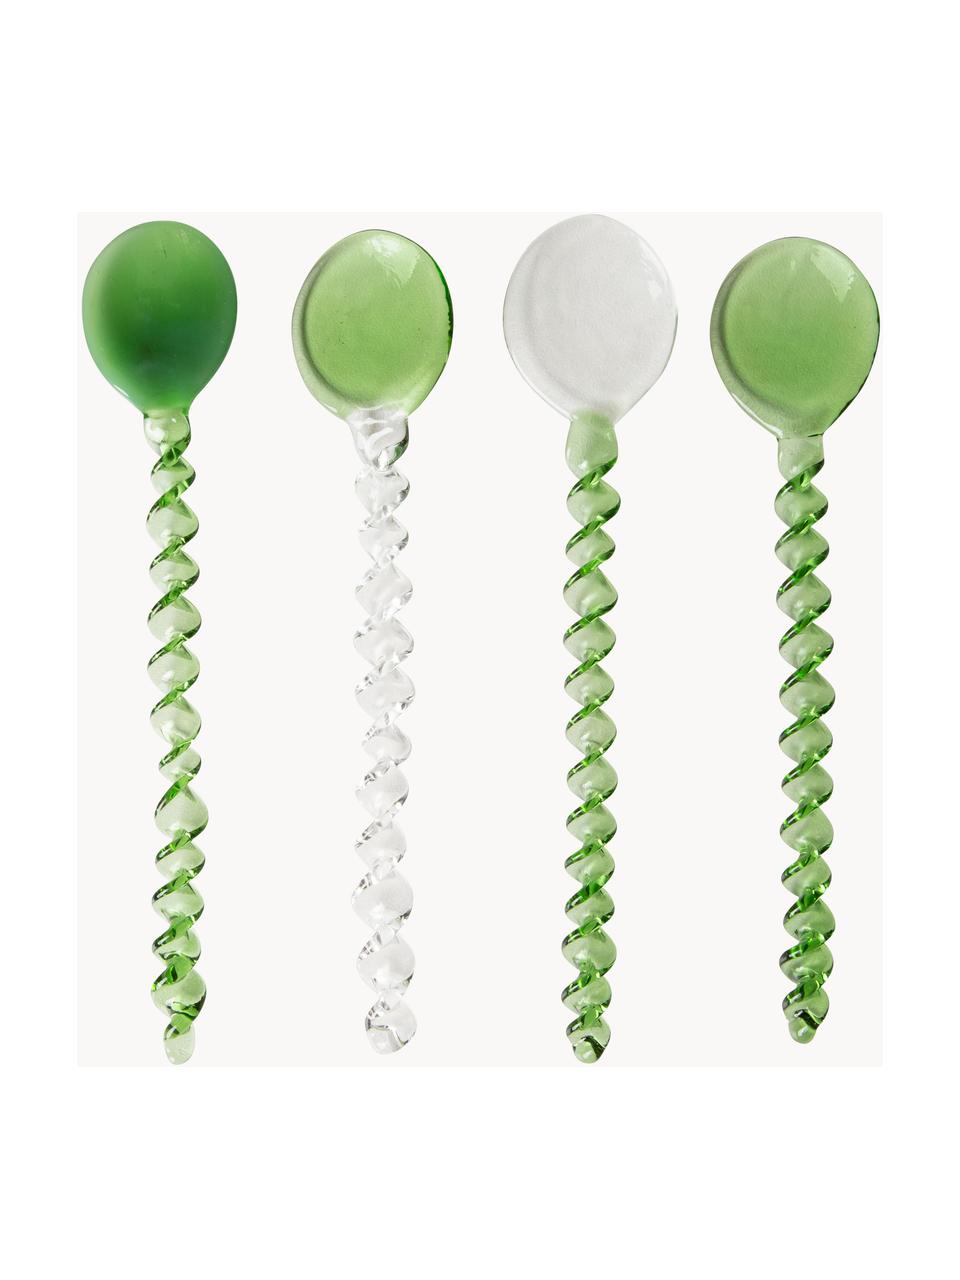 Malé sklenené lyžičky Emeralds, 4 ks, Sklo, Zelená, priehľadná, D 12 cm